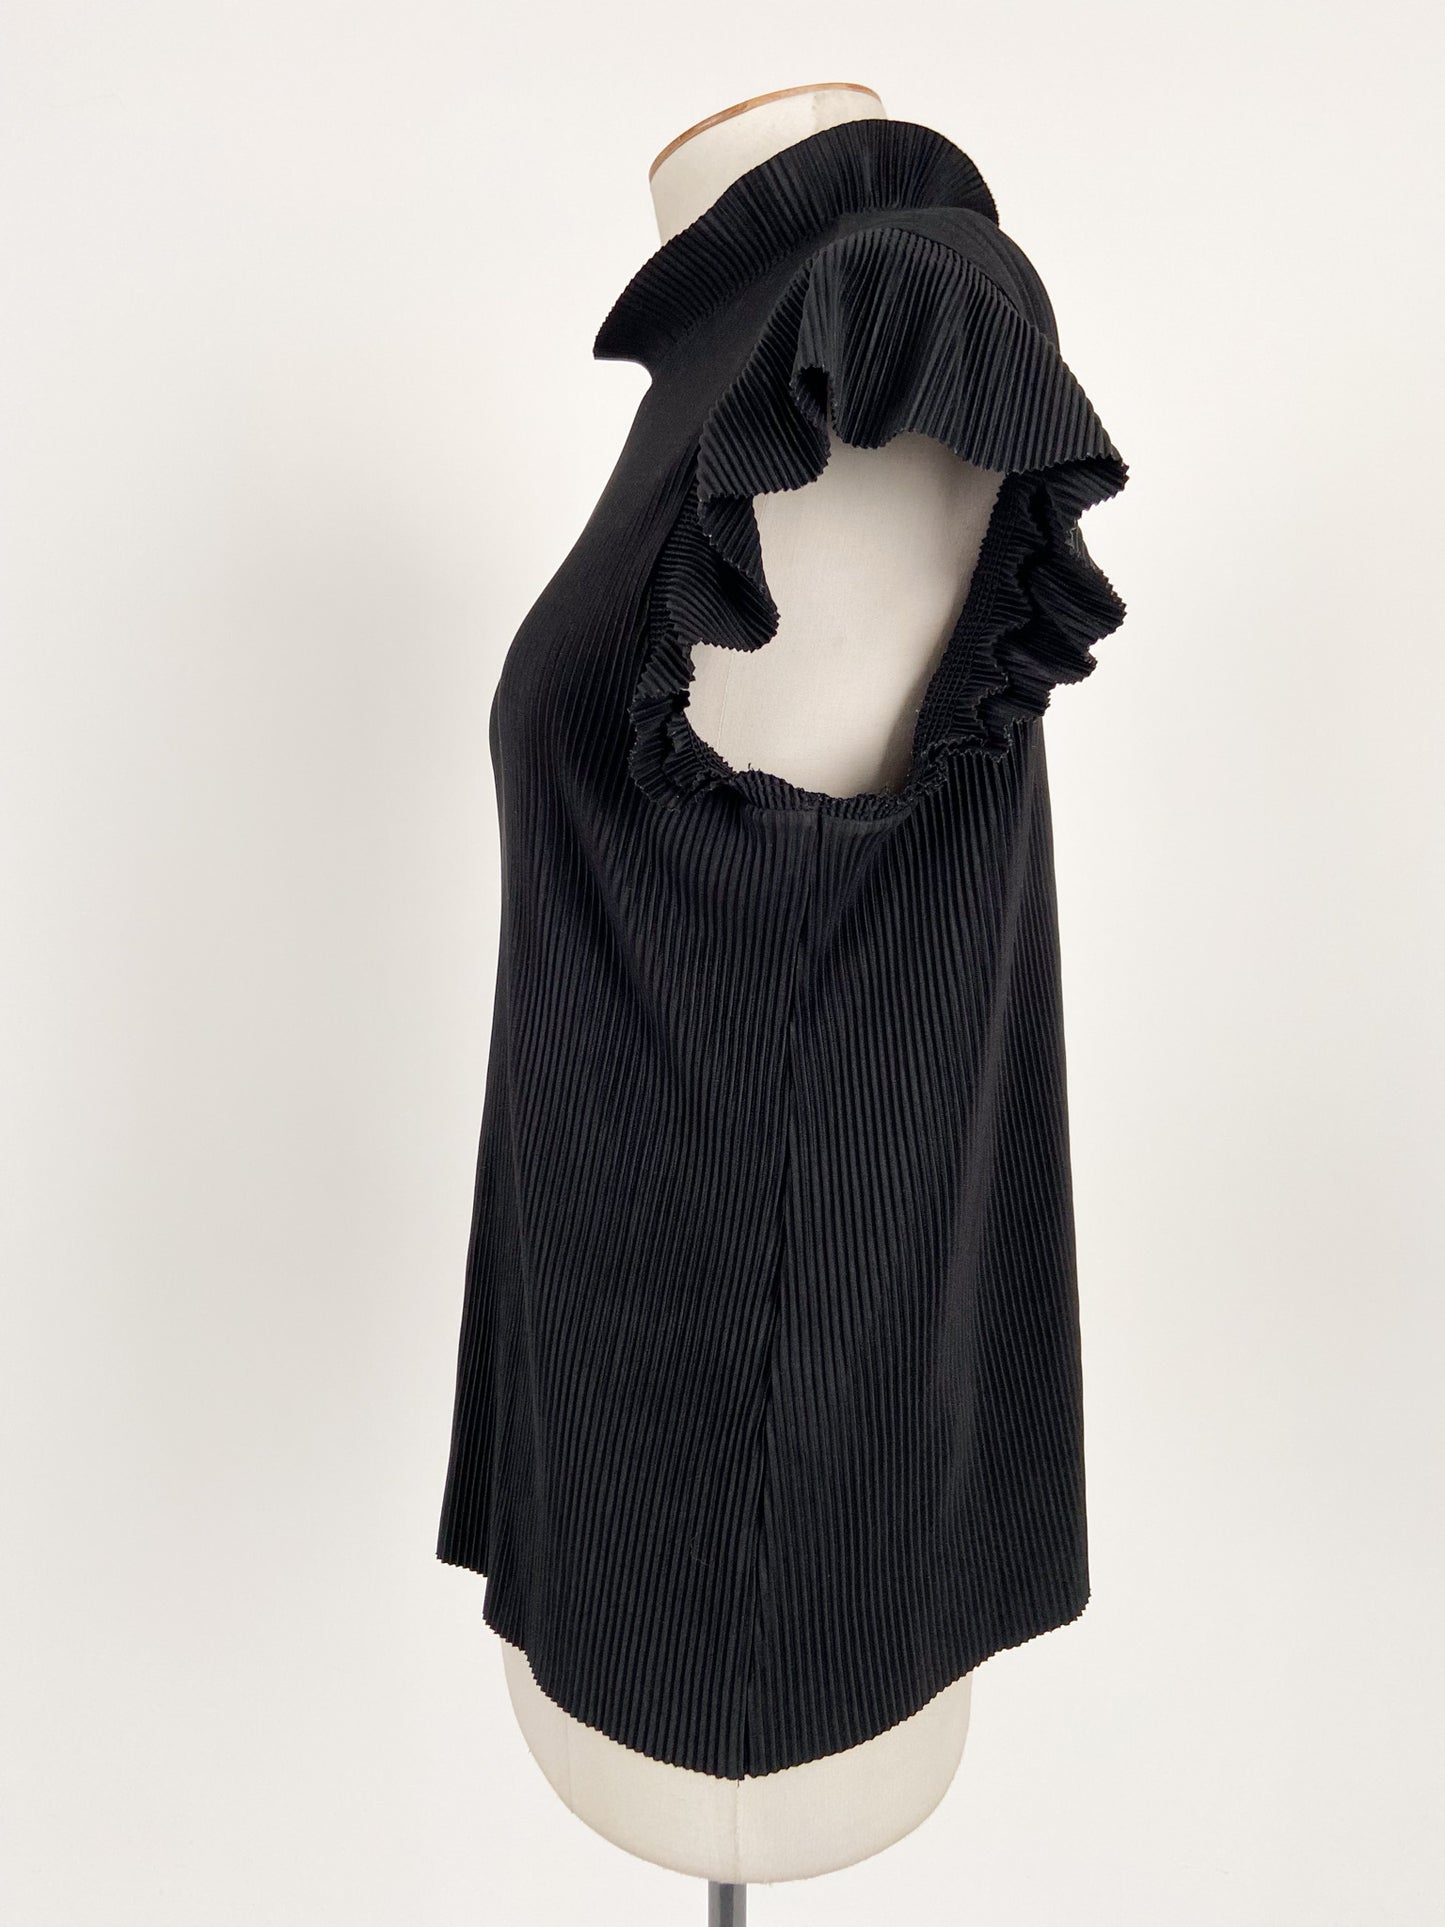 Zara | Black Workwear Top | Size S